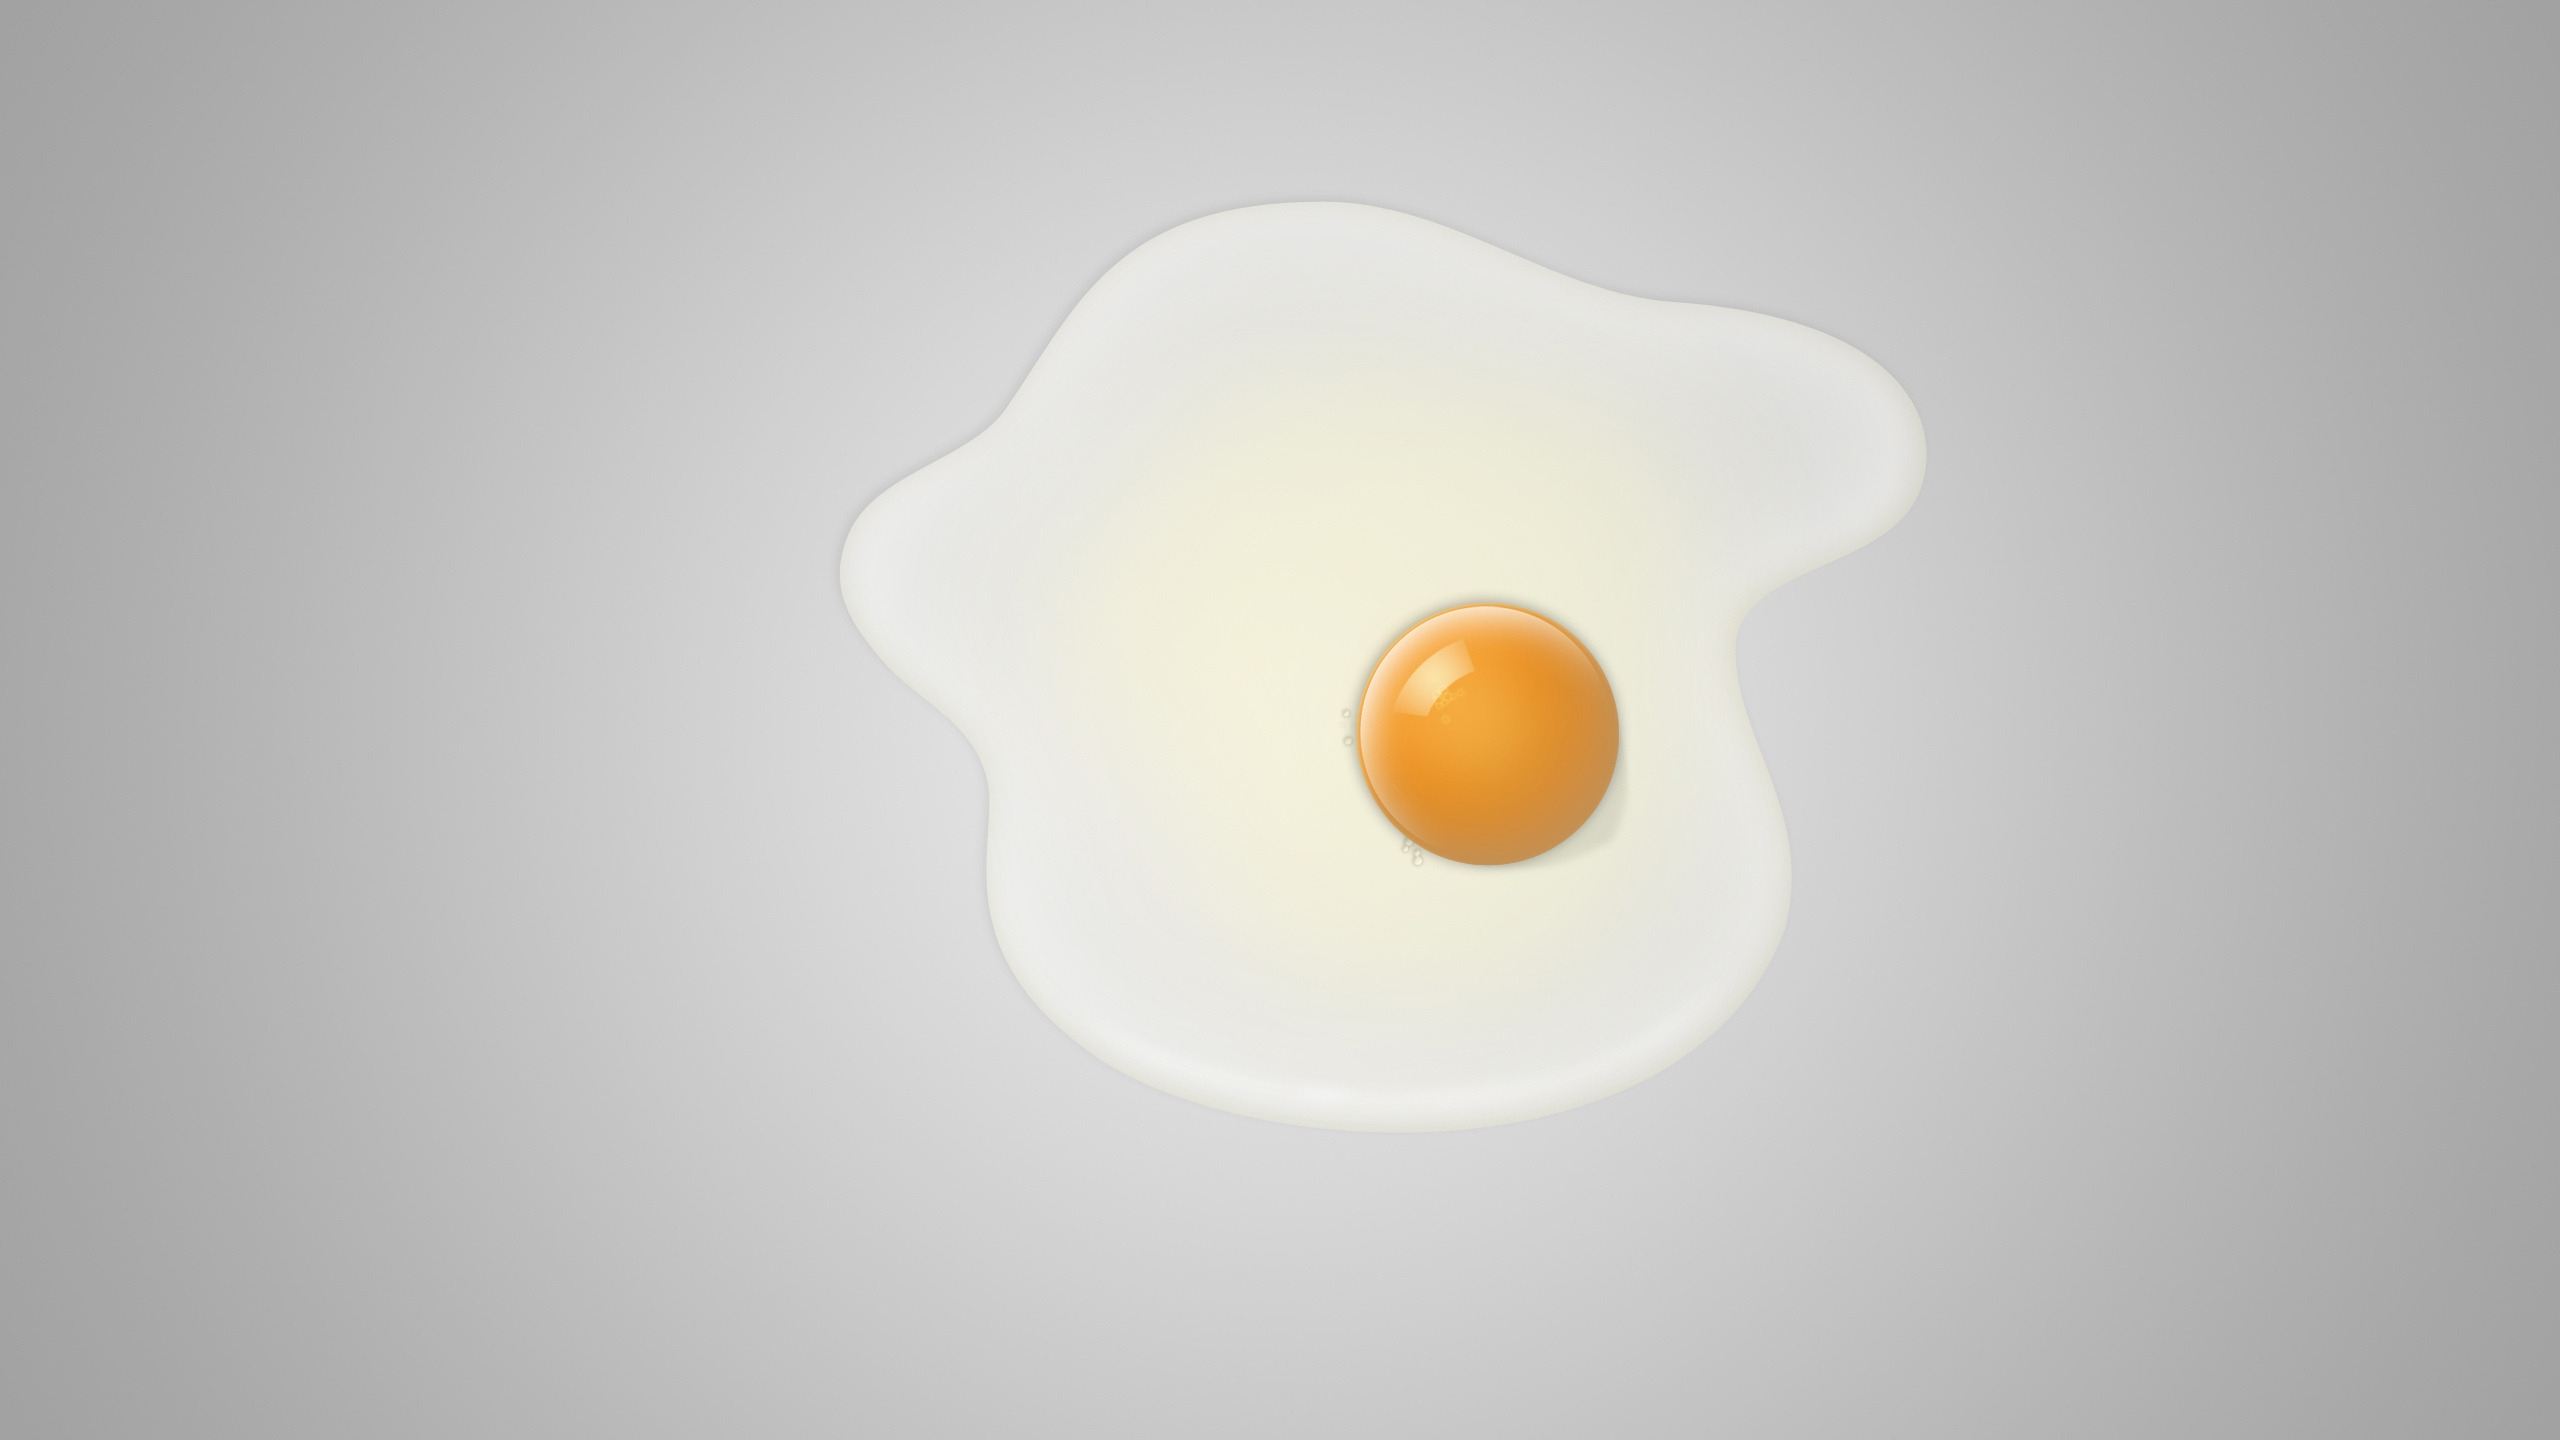 Minimal fried egg for 2560x1440 HDTV resolution